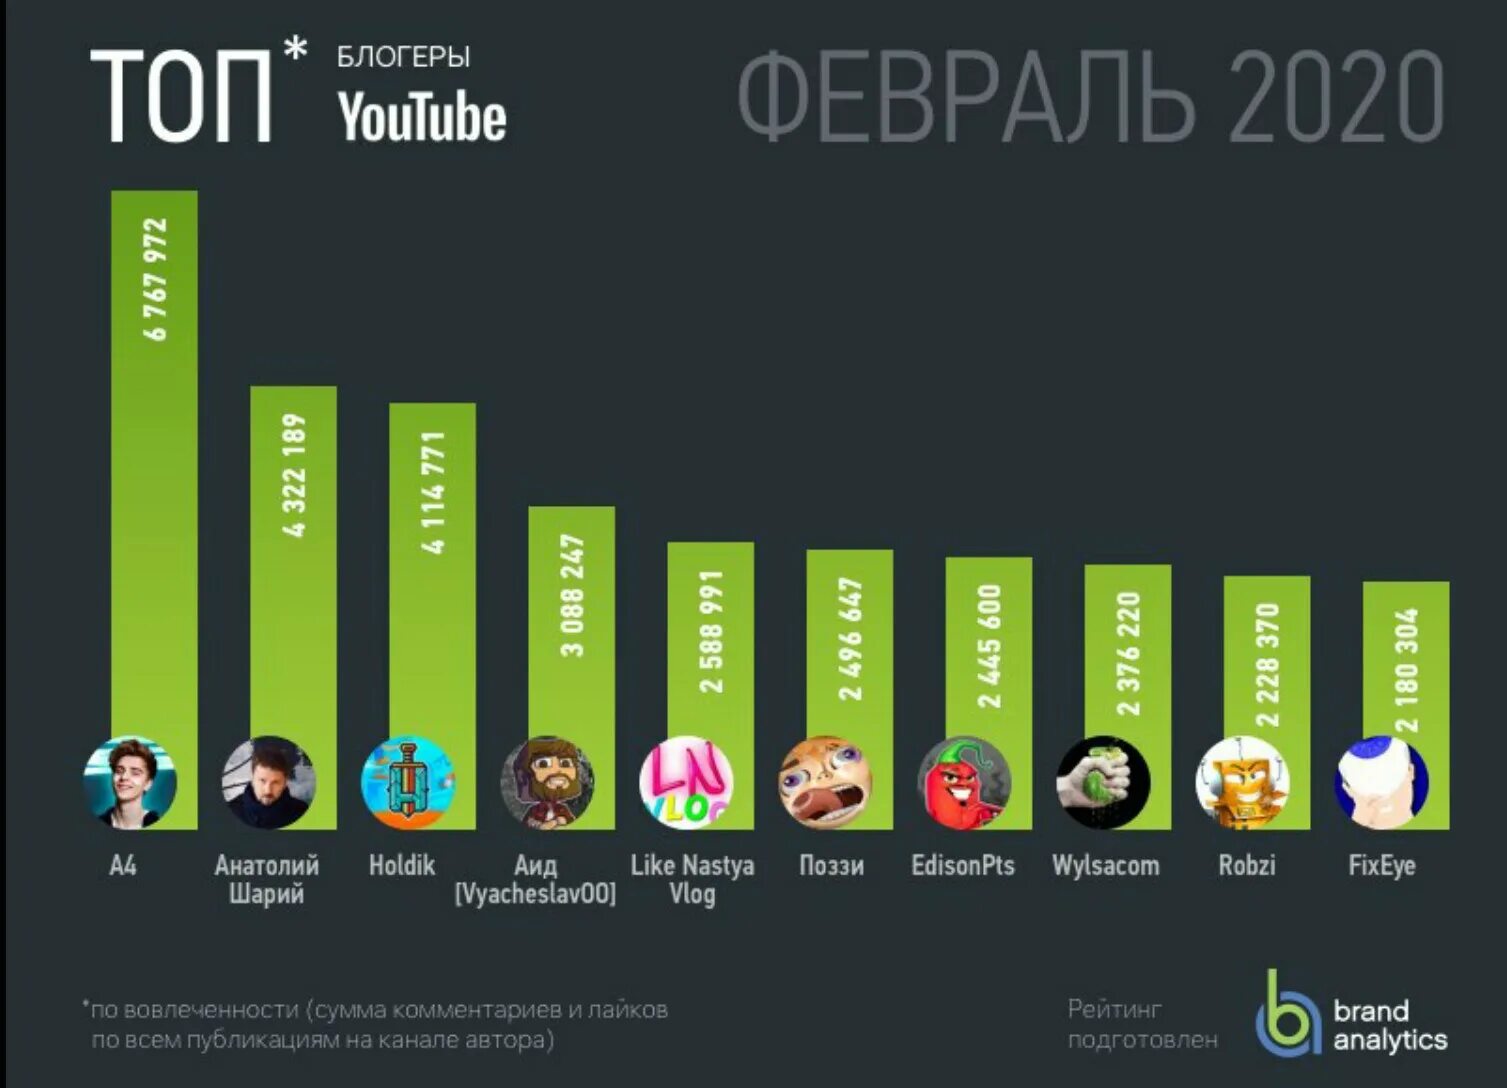 Канал с самыми большими подписчиками. Список самых популярных блогеров. Топ самых популярных блоггеров России. Топ 10 популярных блоггеров. Список самых популярных каналов.